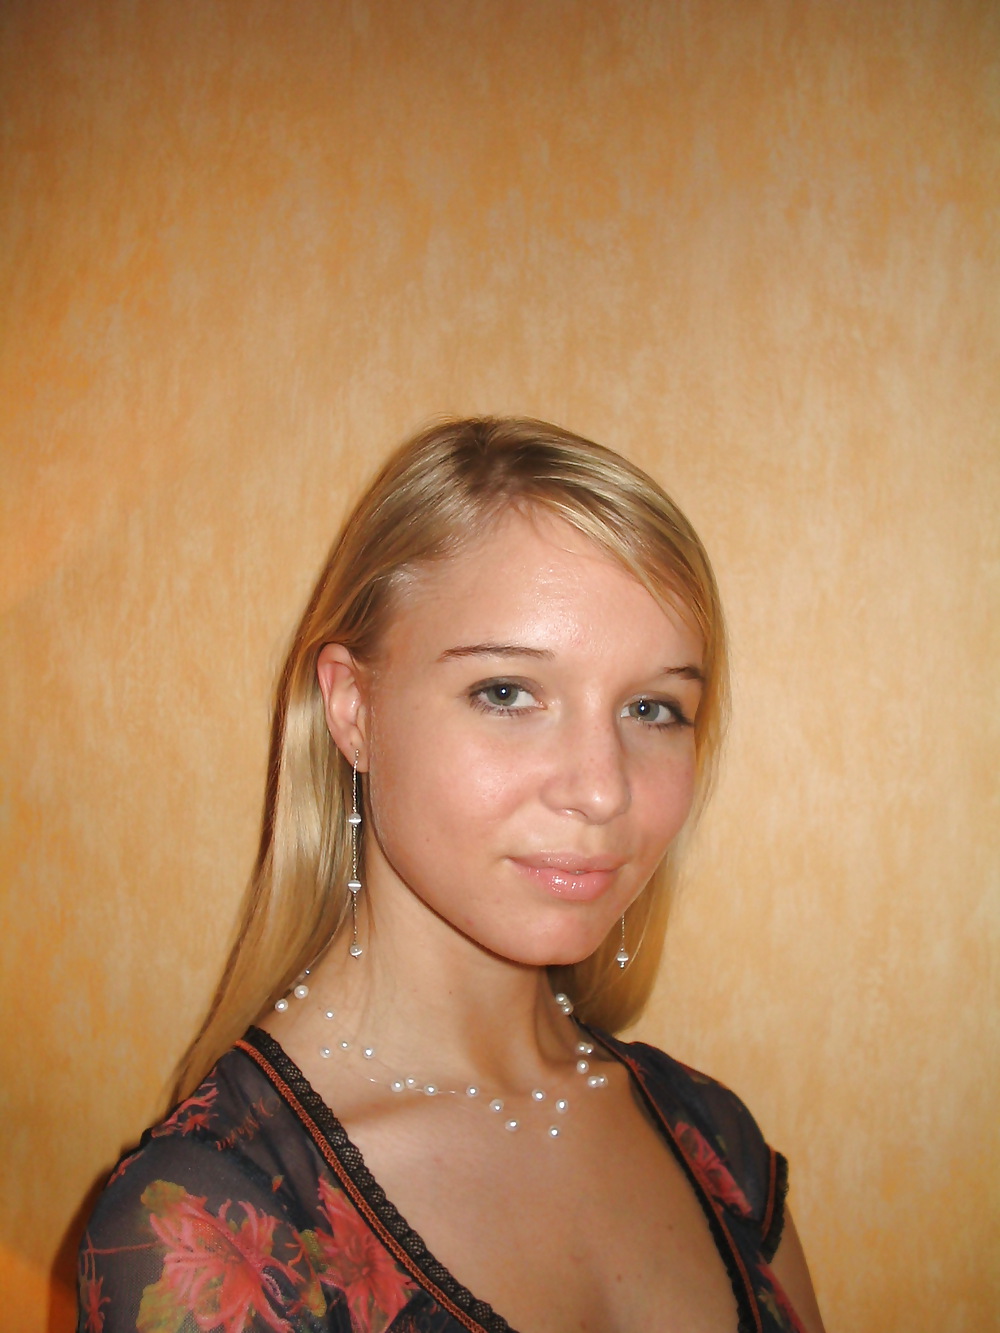 Hot ex russian teen girlfriend #7484992